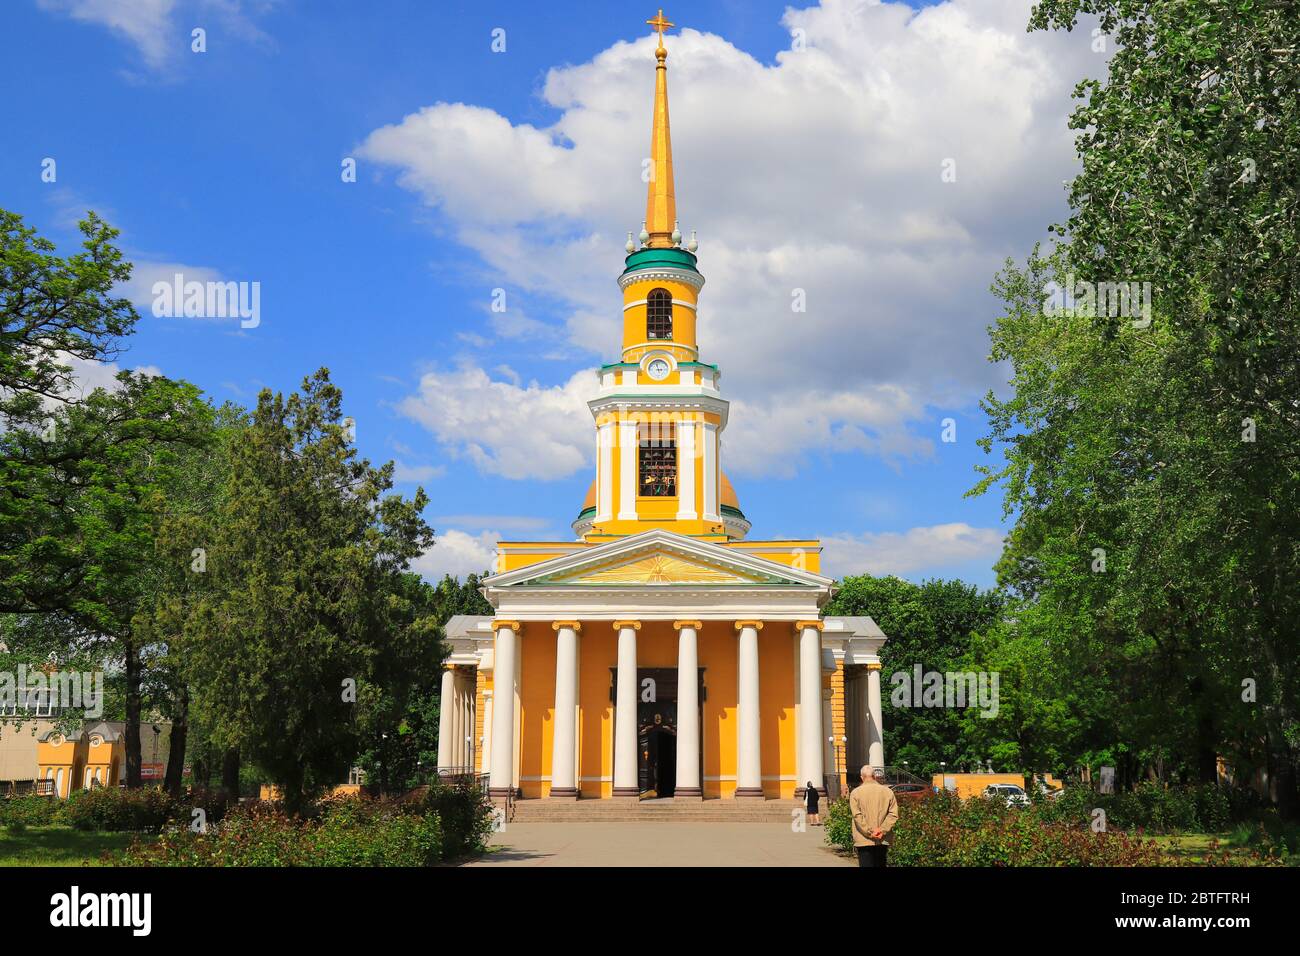 Belle église chrétienne orthodoxe avec dômes dorés, Église de la Transfiguration. Cathédrale Pierre et Paul dans la ville de Dnepr, Dnepropetrovsk, Ukra Banque D'Images